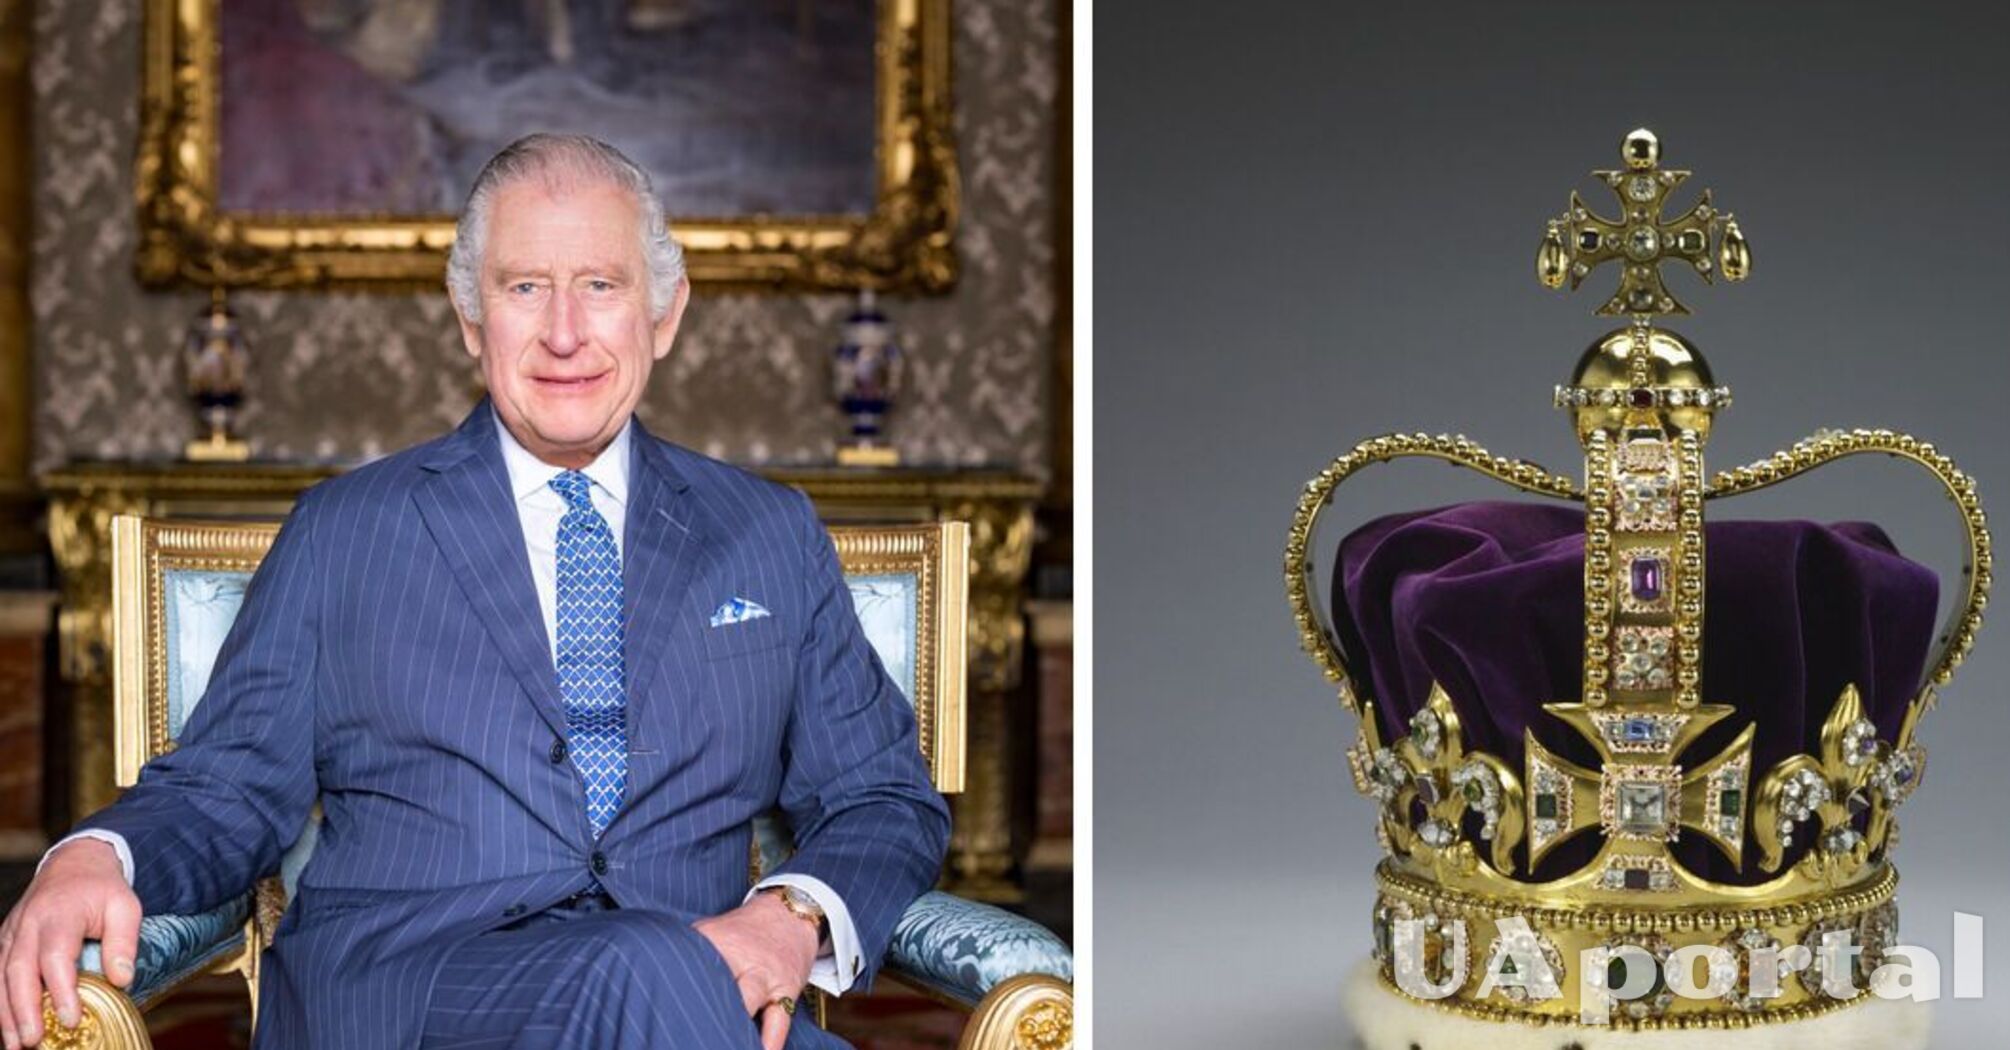 Діаманти, сапфіри, турмаліни, золото: скільки коштує корона віком 360 років, яку надягнуть на Чарльза III під час коронації